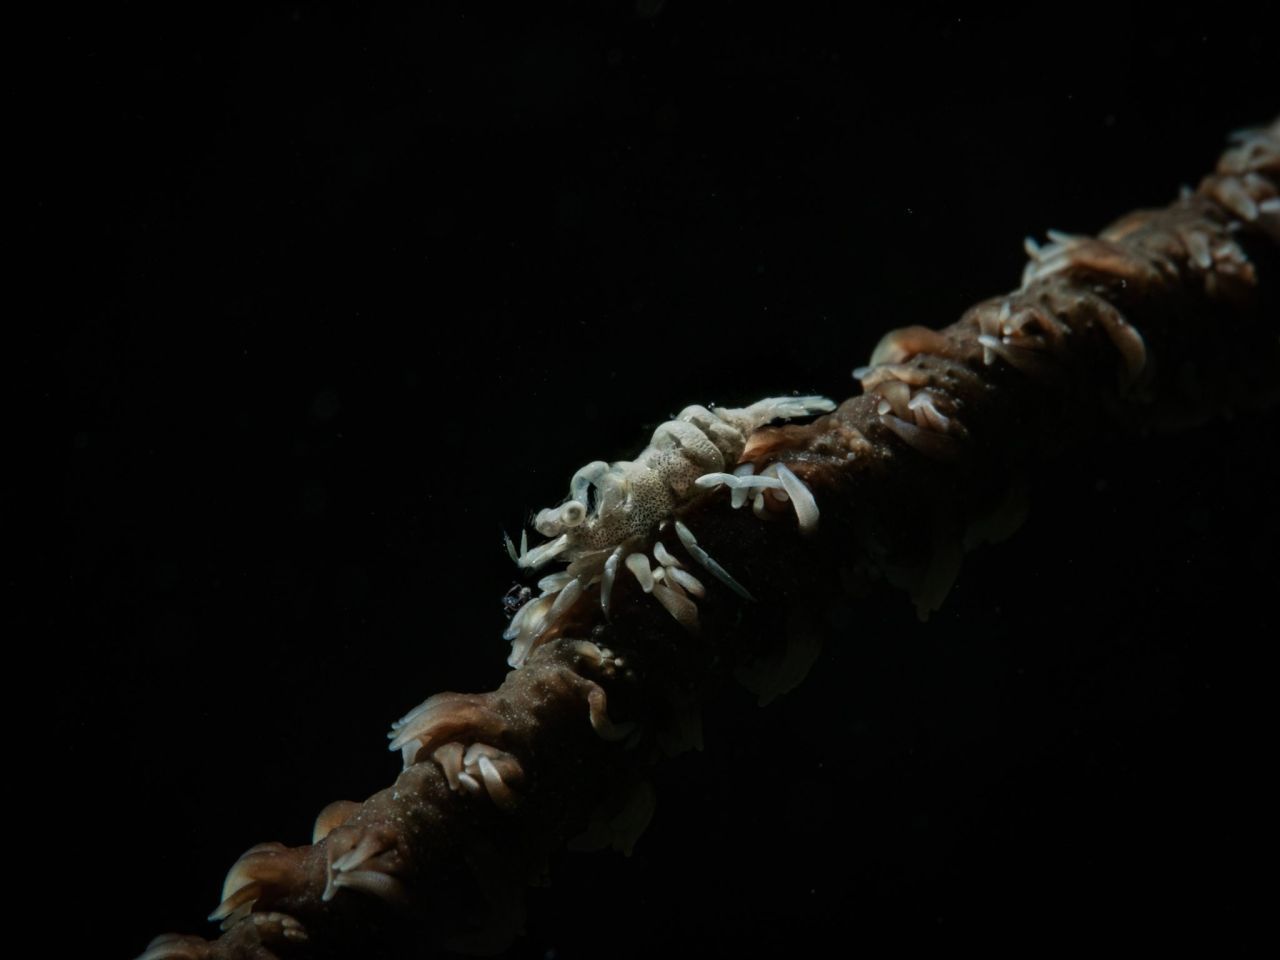 Ebenfalls perfekt getarnt sind die nicht mal einen Zentimeter kleinen Korallen-Shrimps, die aussehen wie die Organismen, auf denen sie leben.